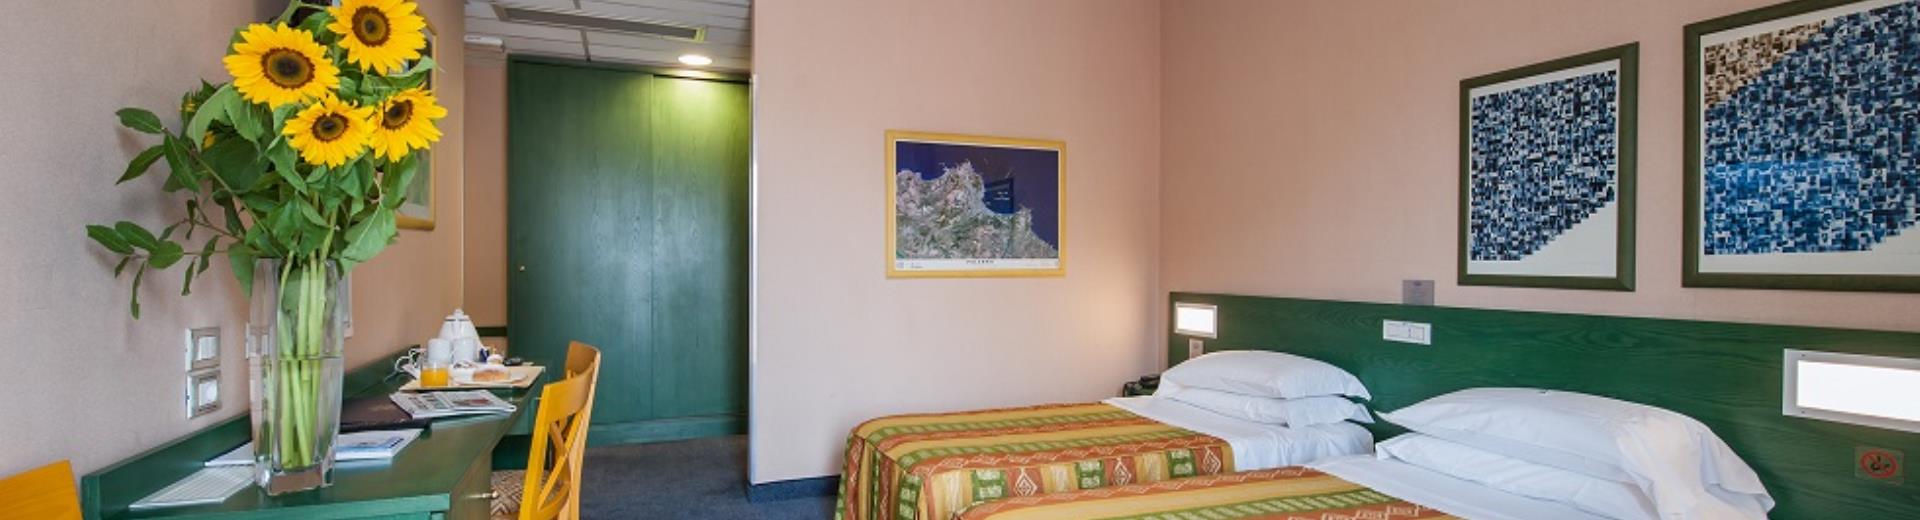 Découvrez le confort de notre hôtel 3 étoiles à Catane, à quelques pas du centre historique